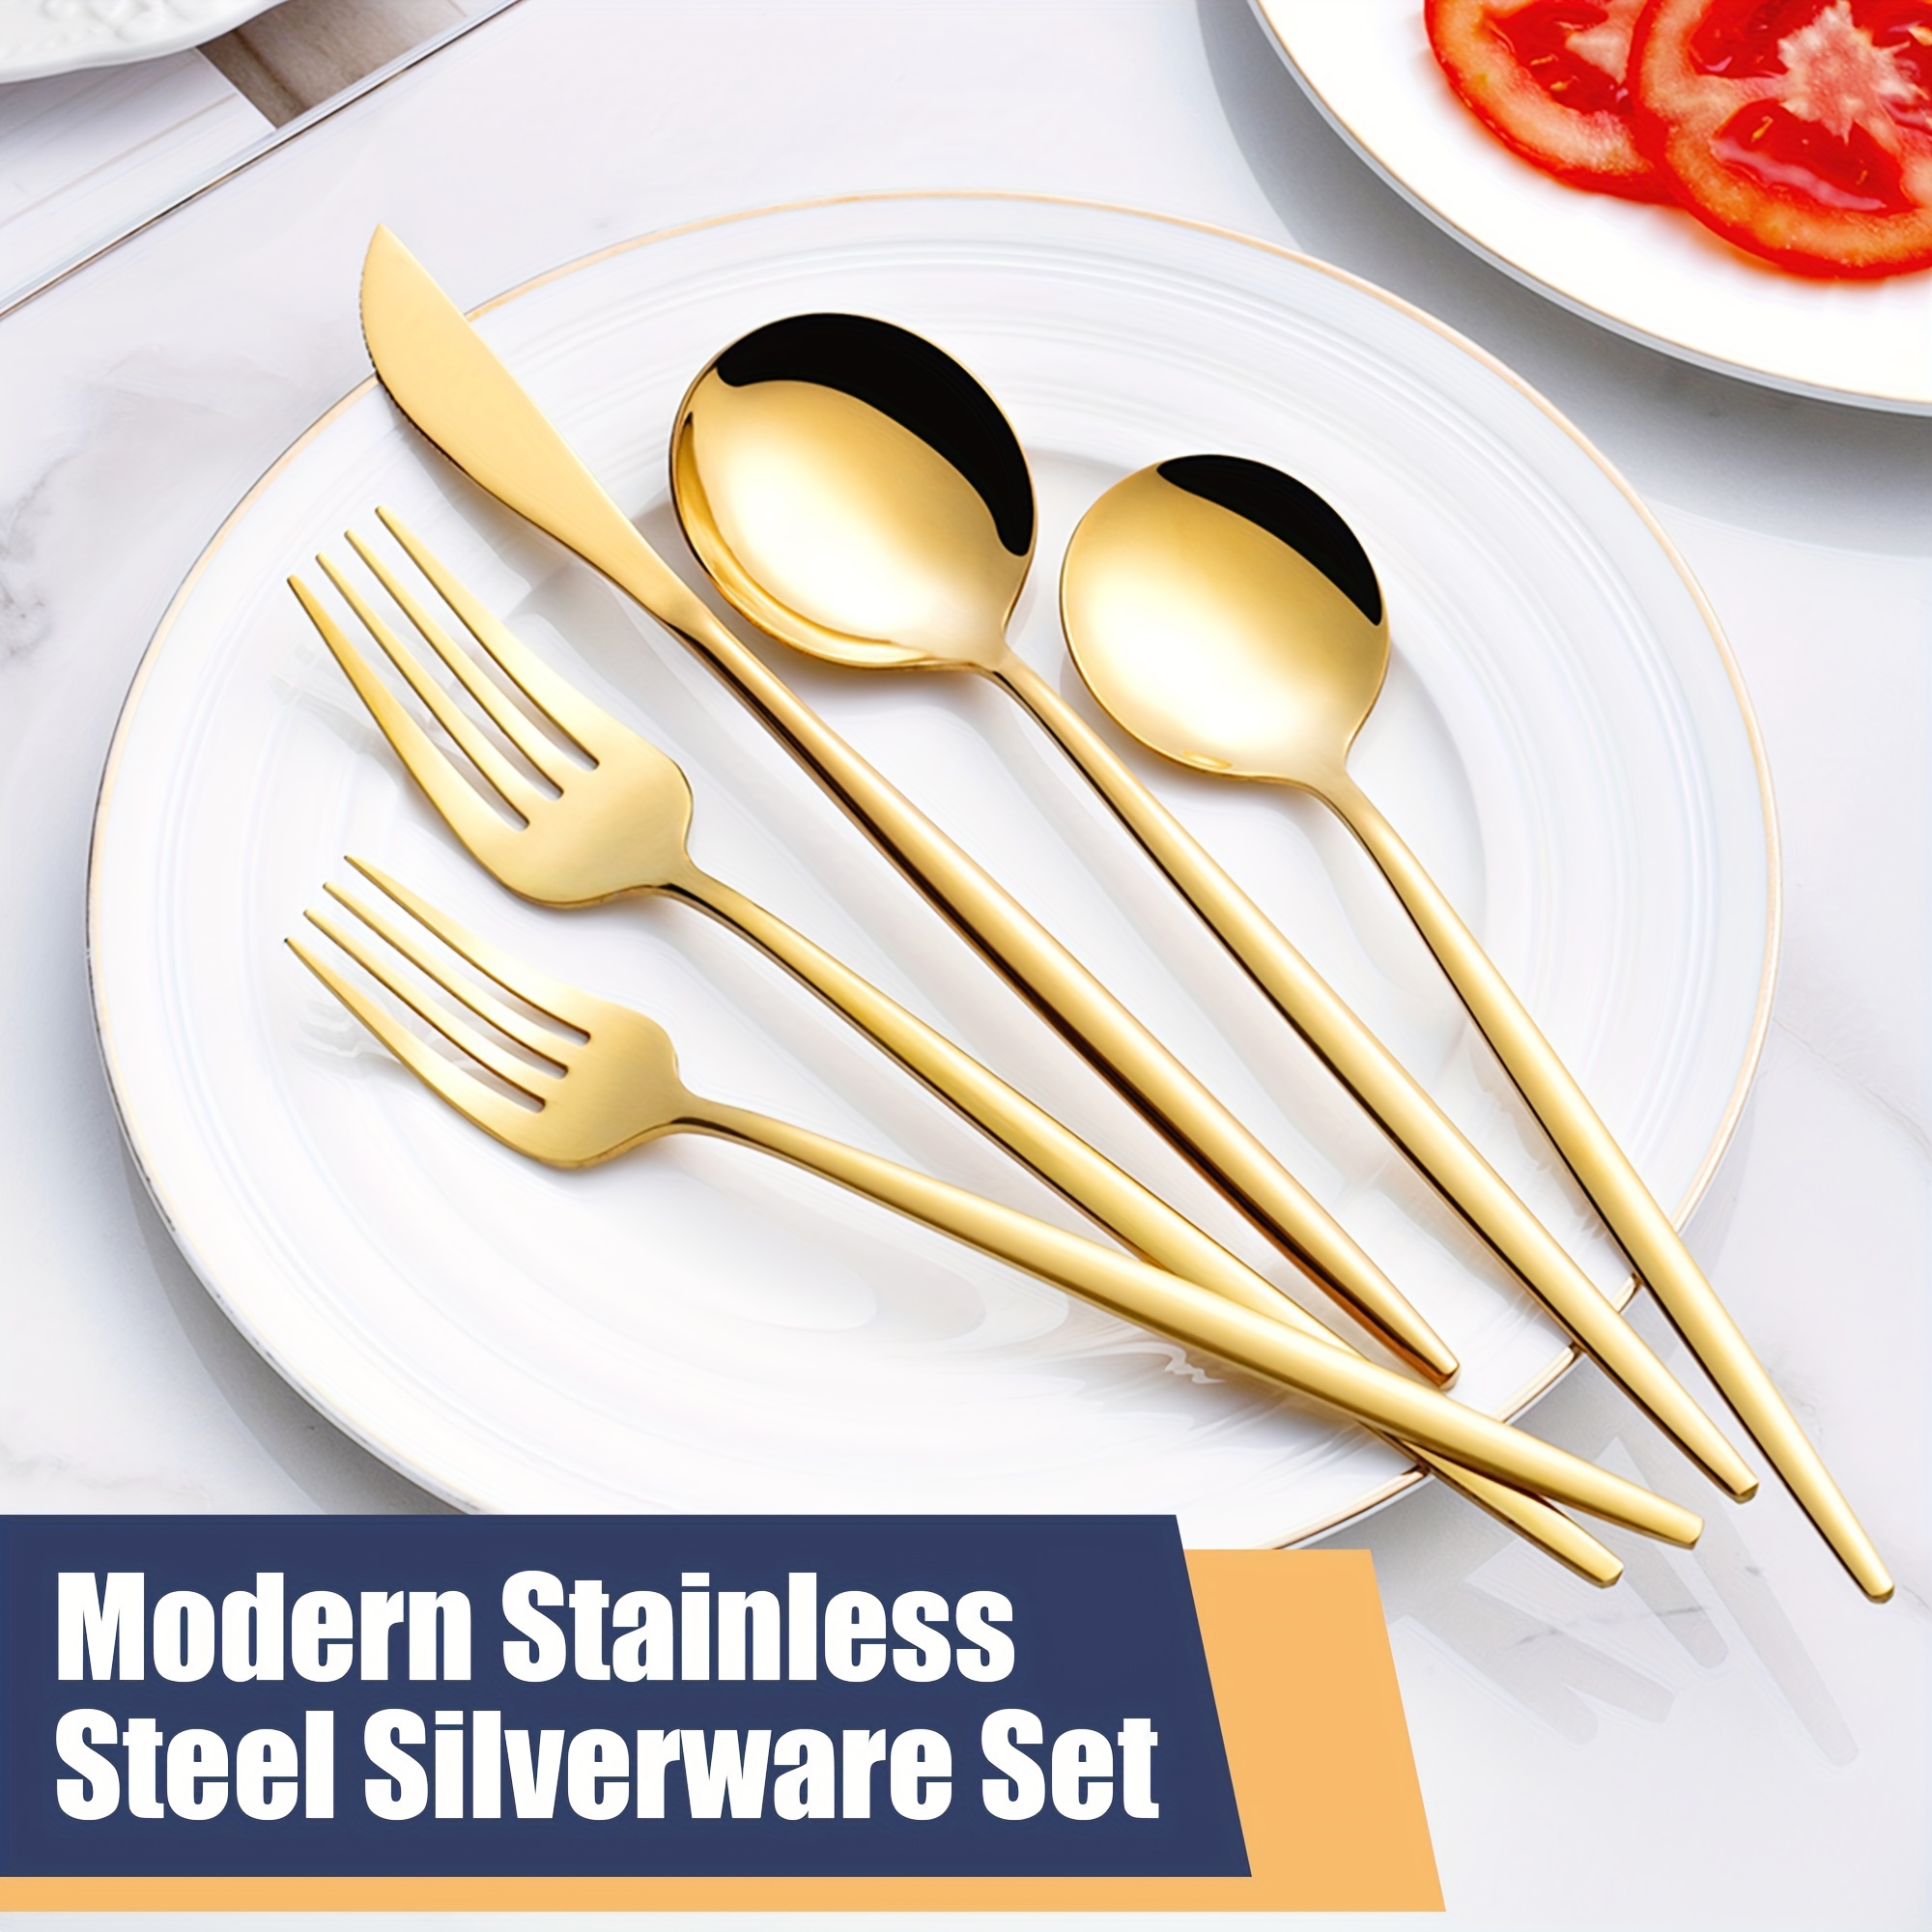 5 Piece Stainless Steel Modern Flatware Eating Utensils Set, Includes  Forks/Spoons/Dinner Knives, Mirror Polished, Dishwasher Safe 